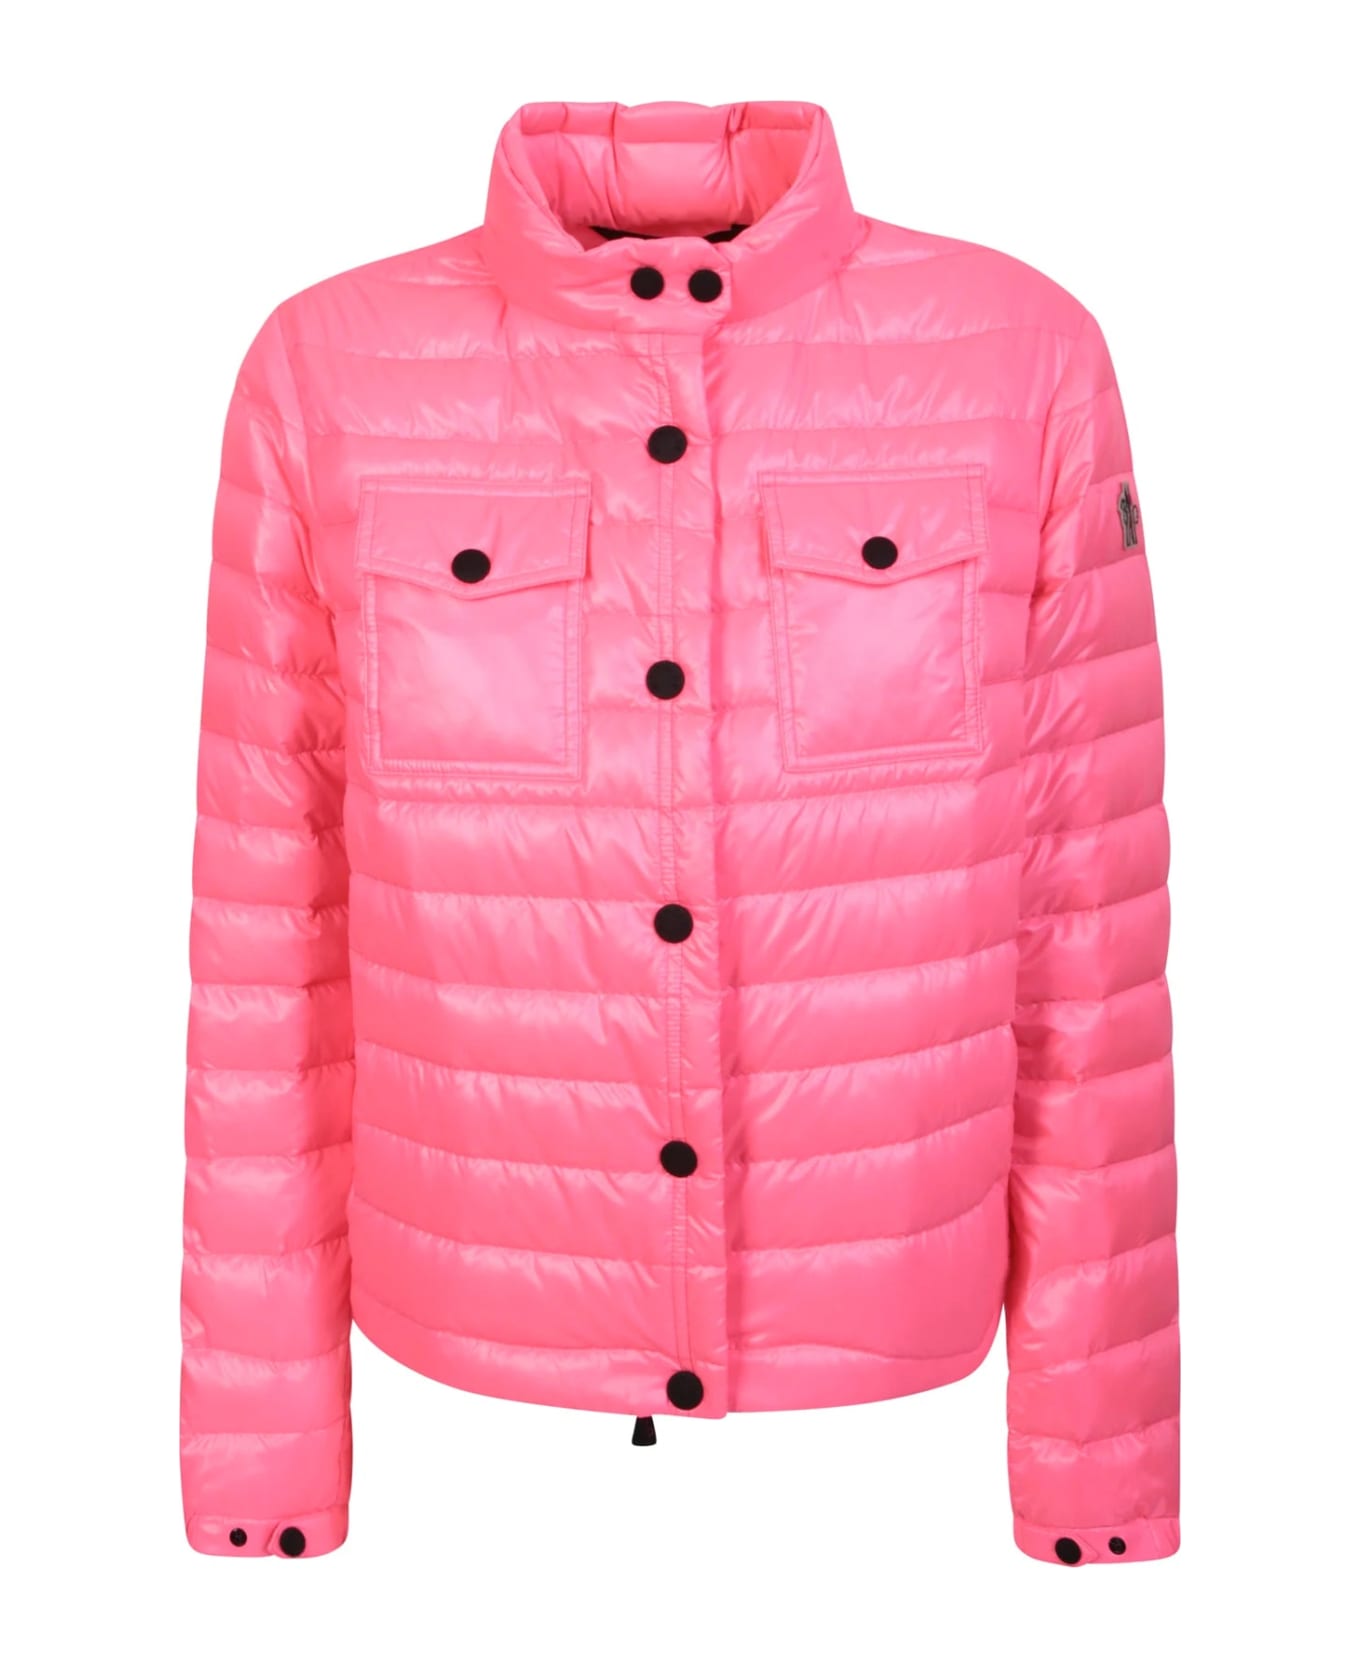 Moncler Grenoble Grenoble Logo Padded Jacket - Pink ダウンジャケット